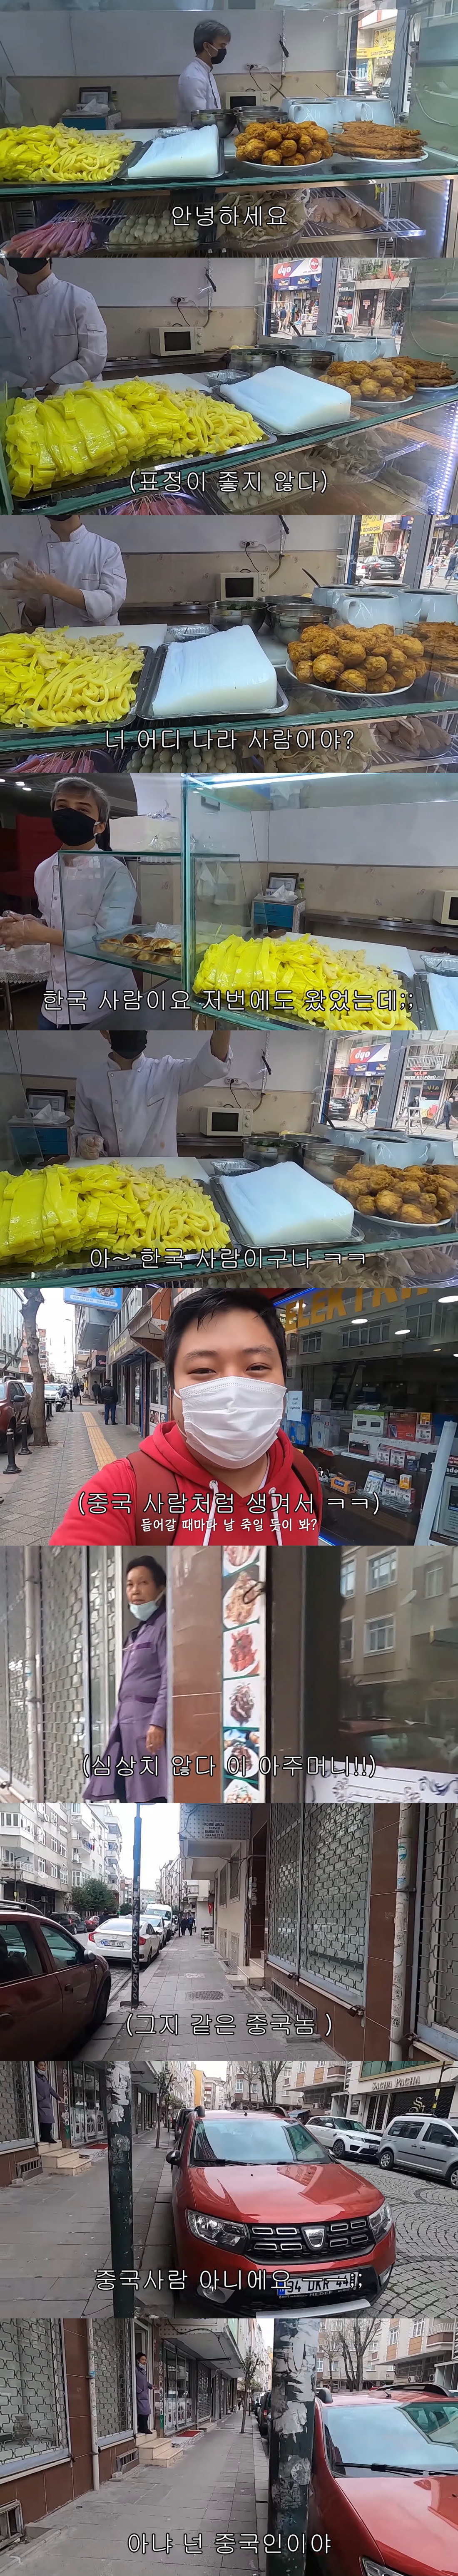 한국인이 외국에서 밥먹기 힘든 이유??